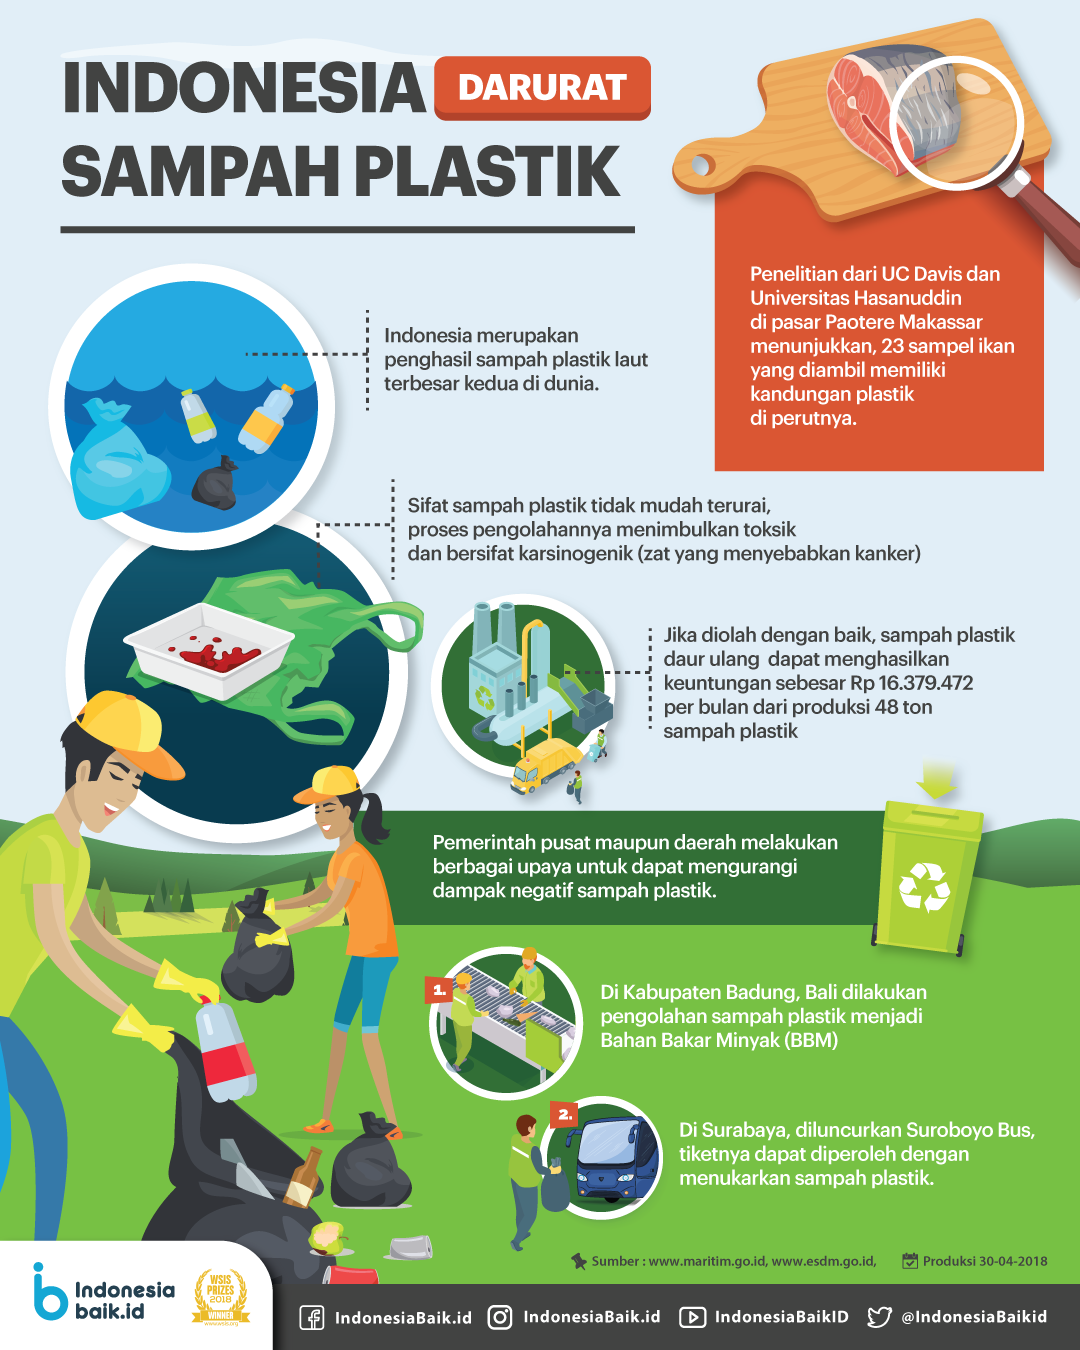 Indonesia Darurat Sampah Plastik Stop Buang Sampah Sembarangan My Xxx Hot Girl